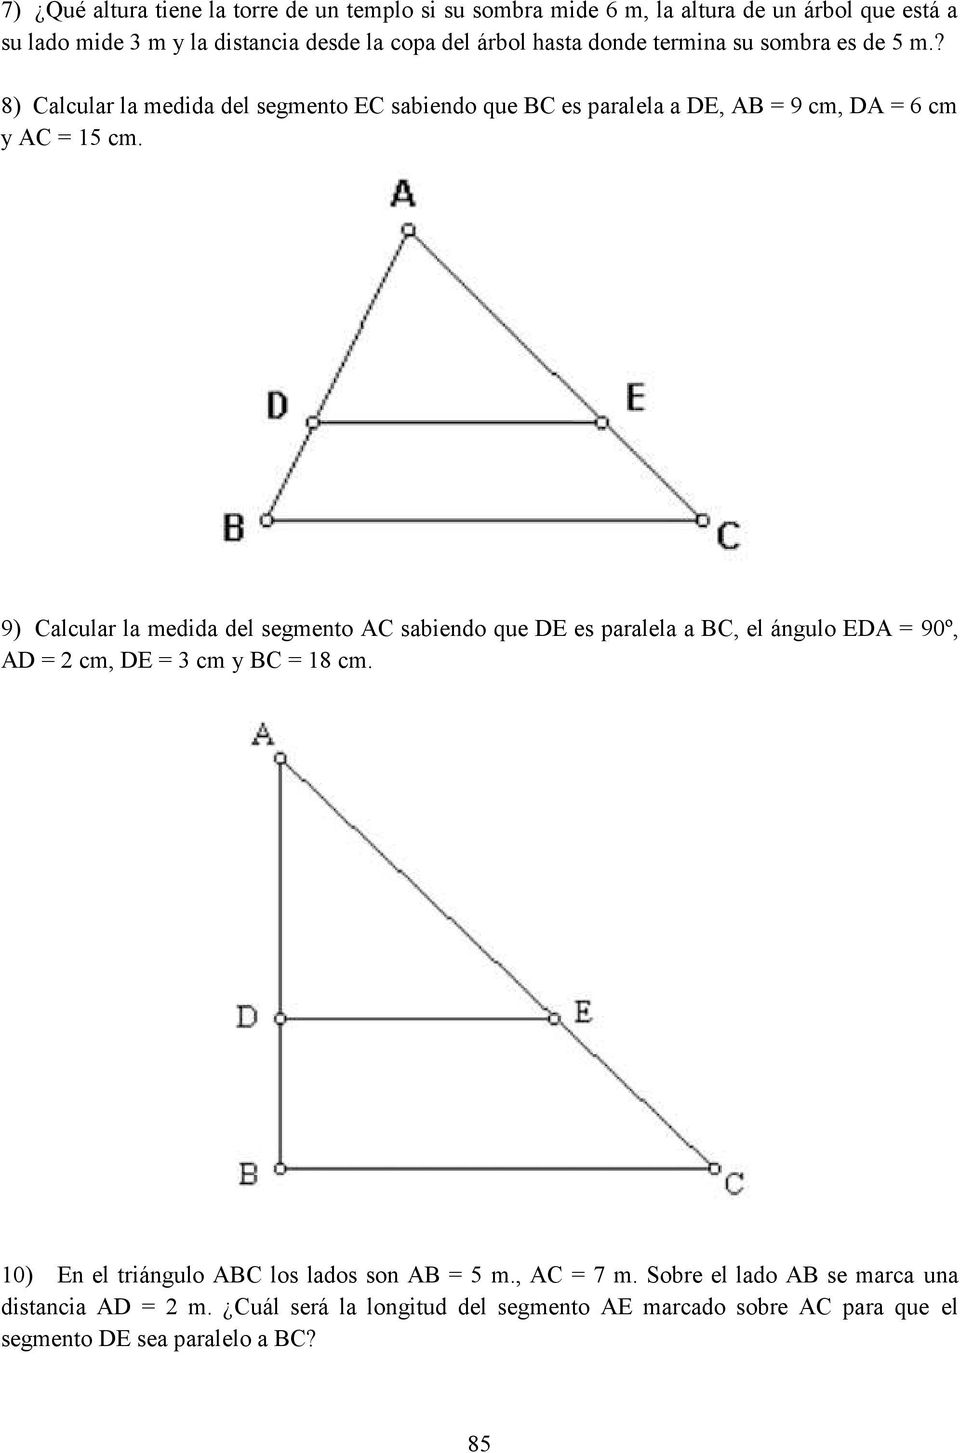 9) Calcular la medida del segmento AC sabiendo que DE es paralela a BC, el ángulo EDA = 90º, AD = 2 cm, DE = 3 cm y BC = 18 cm.